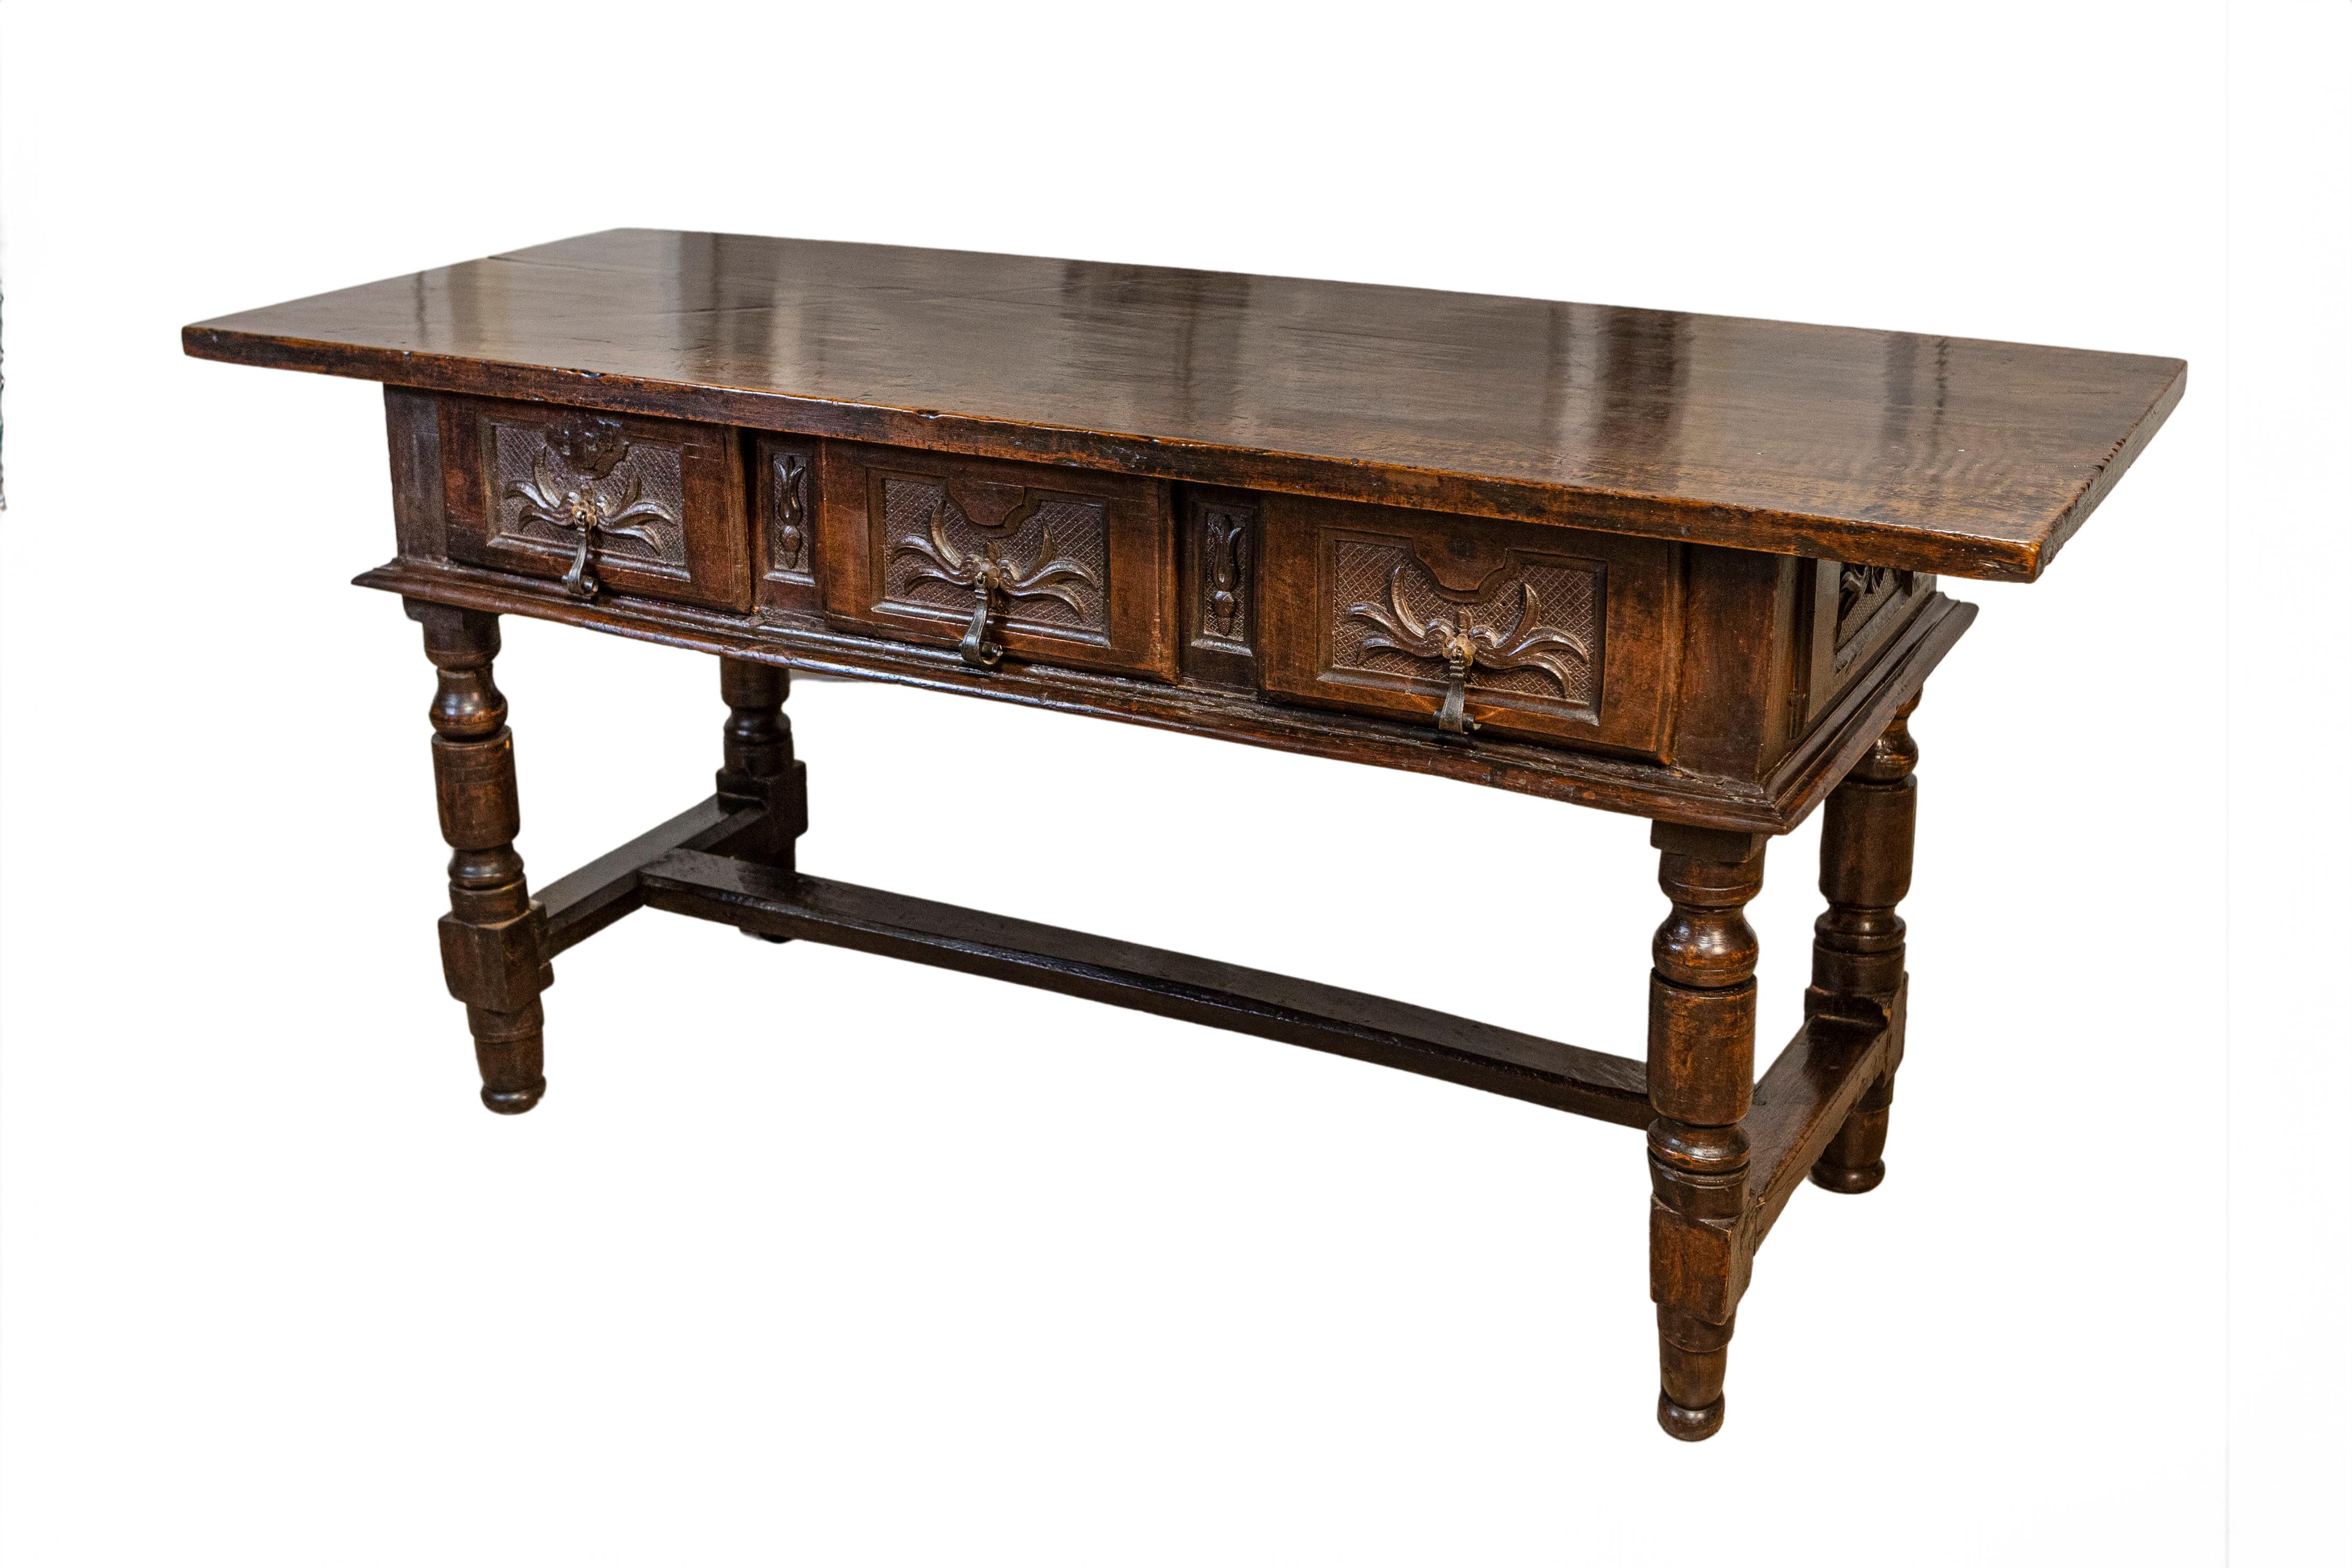 Spanischer Barocktisch aus Nussbaum aus dem 17. Jahrhundert mit drei Schubladen, geschnitztem Blattwerk auf Kreuzschraffuren, gedrechselten Beinen und H-förmiger Querstrebe. Dieser Tisch aus Nussbaumholz aus dem spanischen Barock des 17.